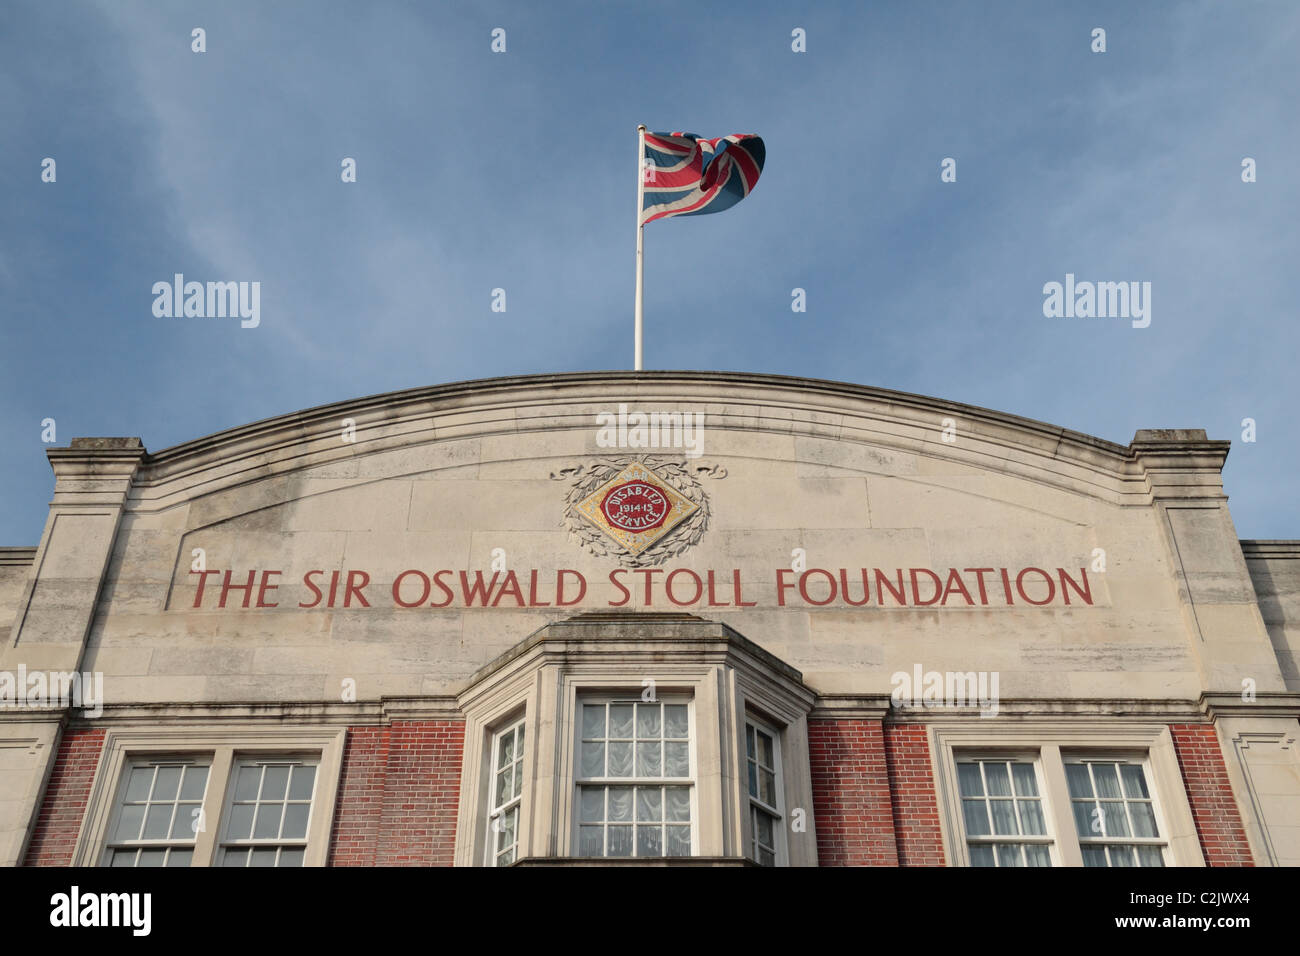 Anschluß-Markierungsfahne fliegen über den Sir Oswald Stoll Foundation aufbauend auf der Fulham Road, Chelsea, London, UK. Stockfoto